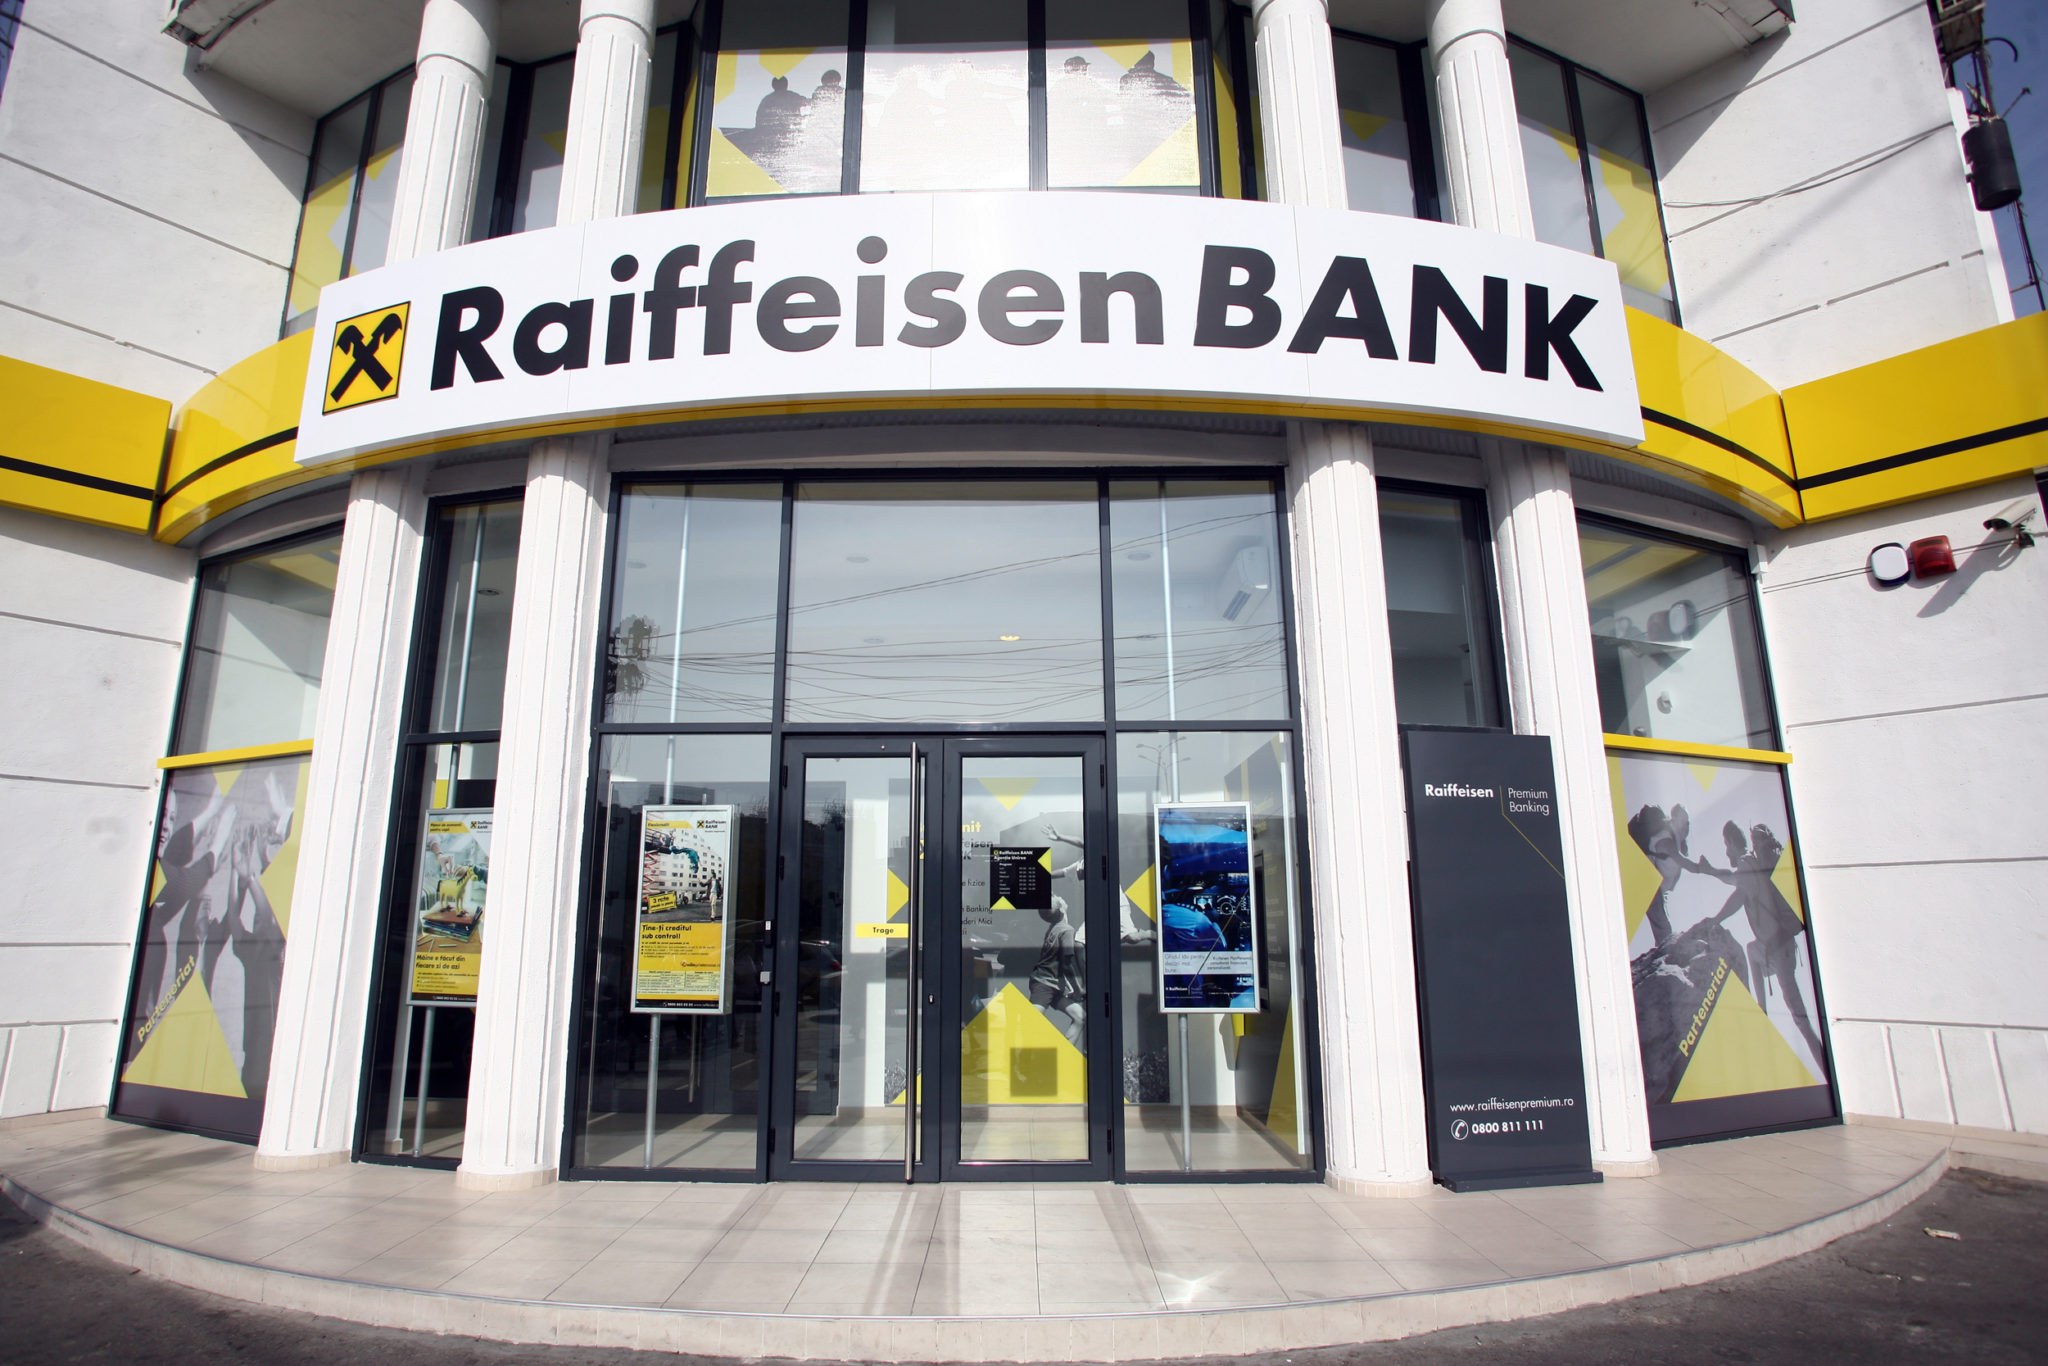 Австрійський Raiffeisen Bank International розглядає можливість продажу російського підрозділу як одну із опцій, група отримала незобов'язуючі пропозиції щодо зацікавленості у цьому активі.